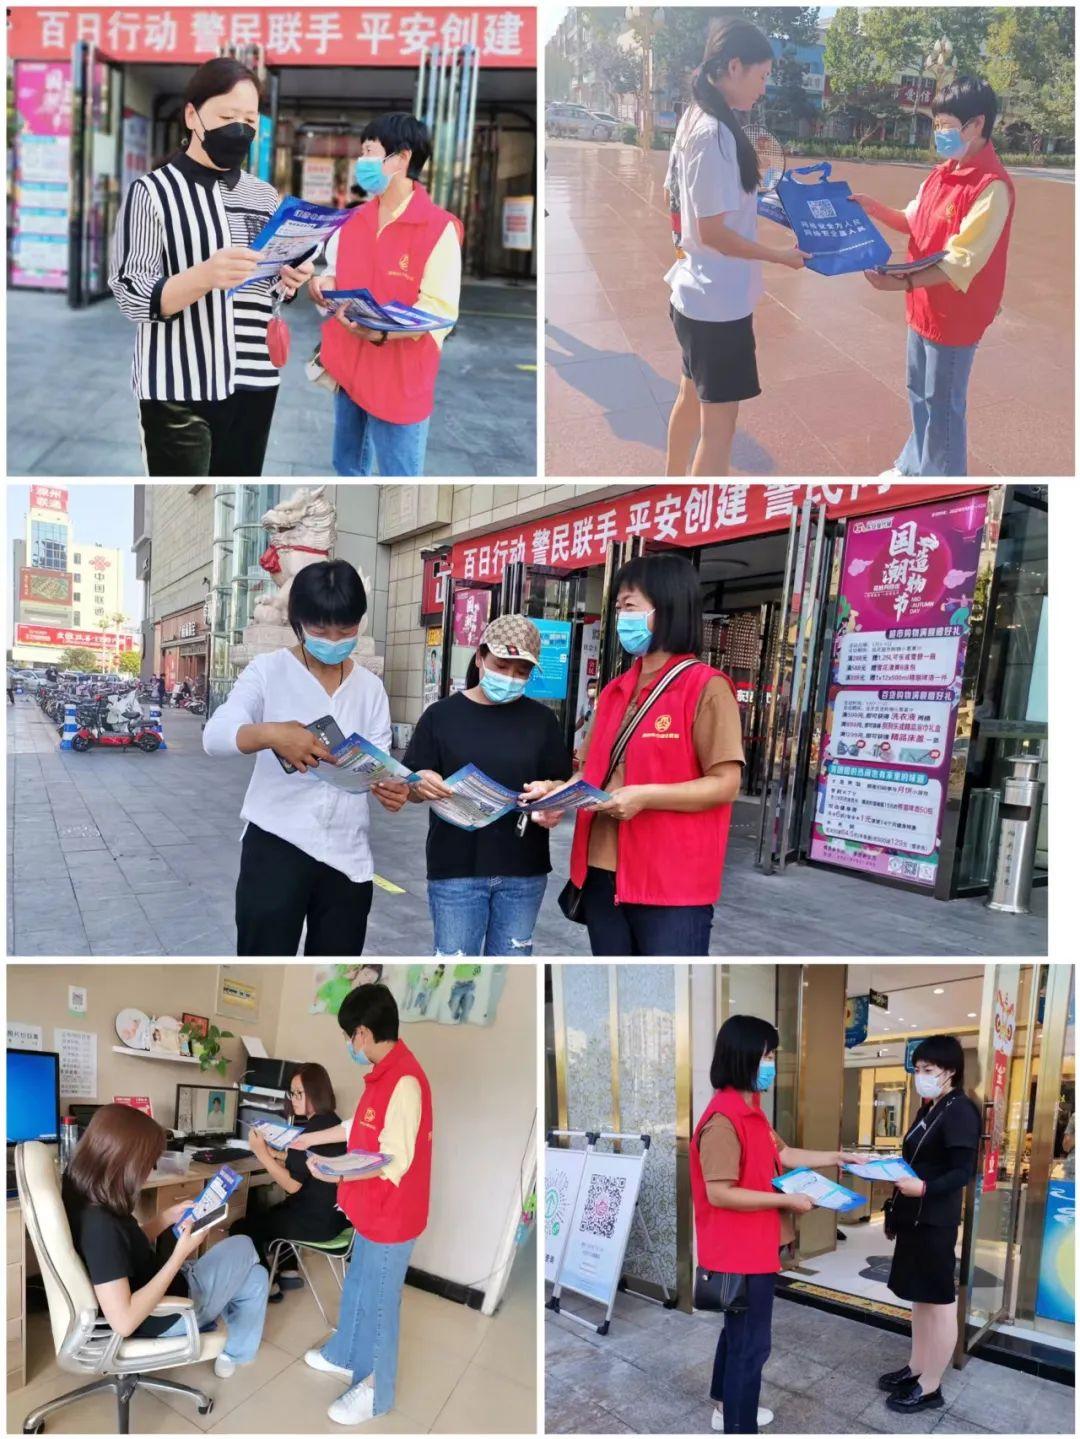 唐山市开展网络安全宣传周“个人信息保护日”活动